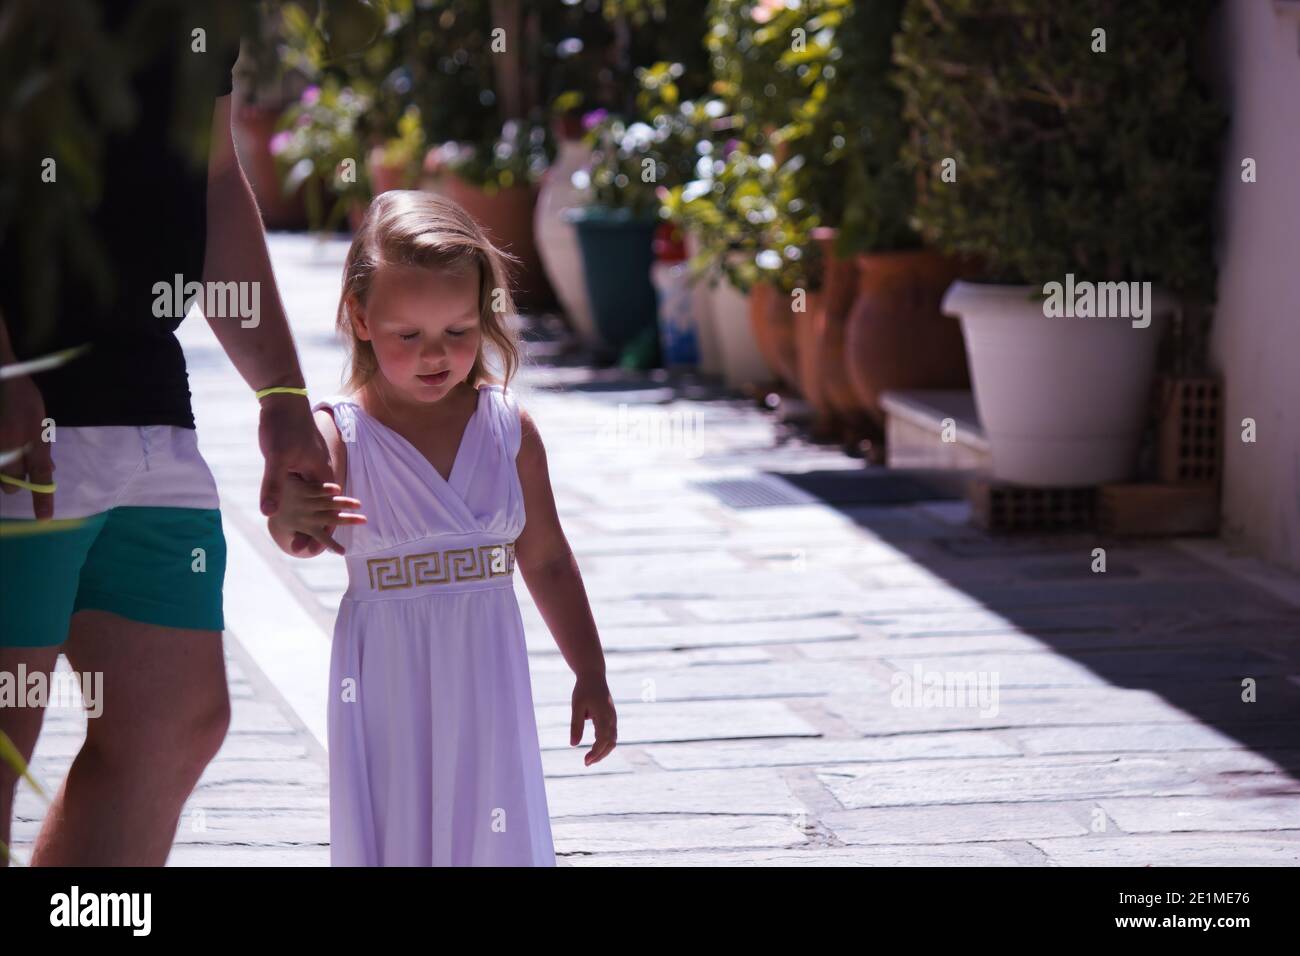 Crète, Grèce - 16 septembre 2017 : une petite fille en robe traditionnelle  grecque marchant tout en tenant un doigt de son parent. Petite fille  européenne Photo Stock - Alamy